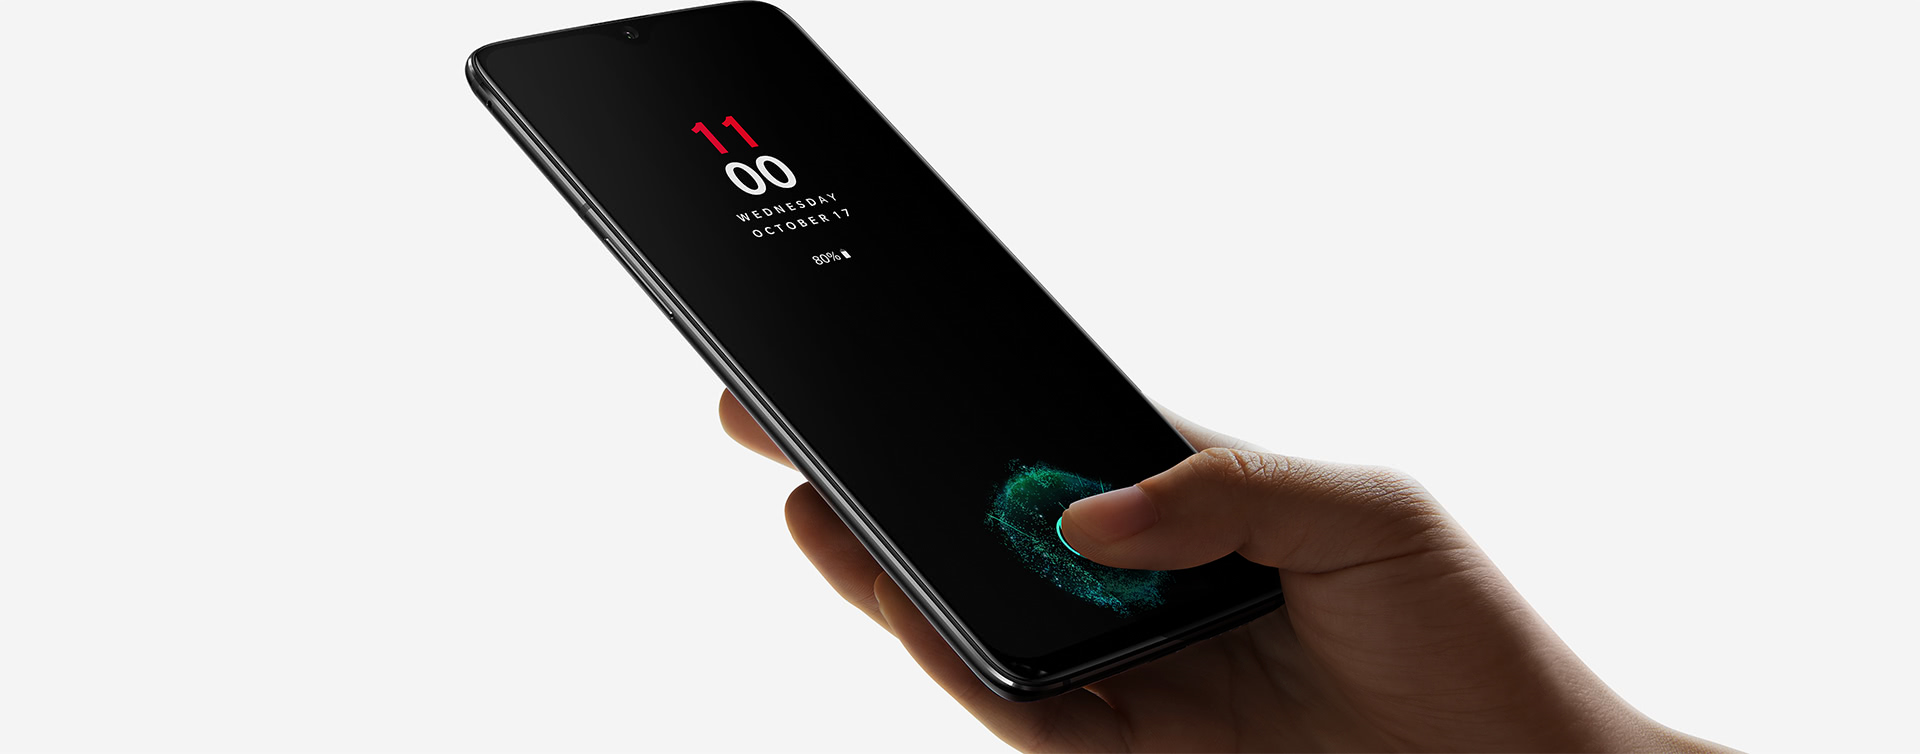 Le capteur d'empreinte digitale sous la surface de l'écran est la principale innovation de ce OnePlus 6T. Son prix reste contenu étant donné les composants qu'il renferme.&nbsp;© OnePlus